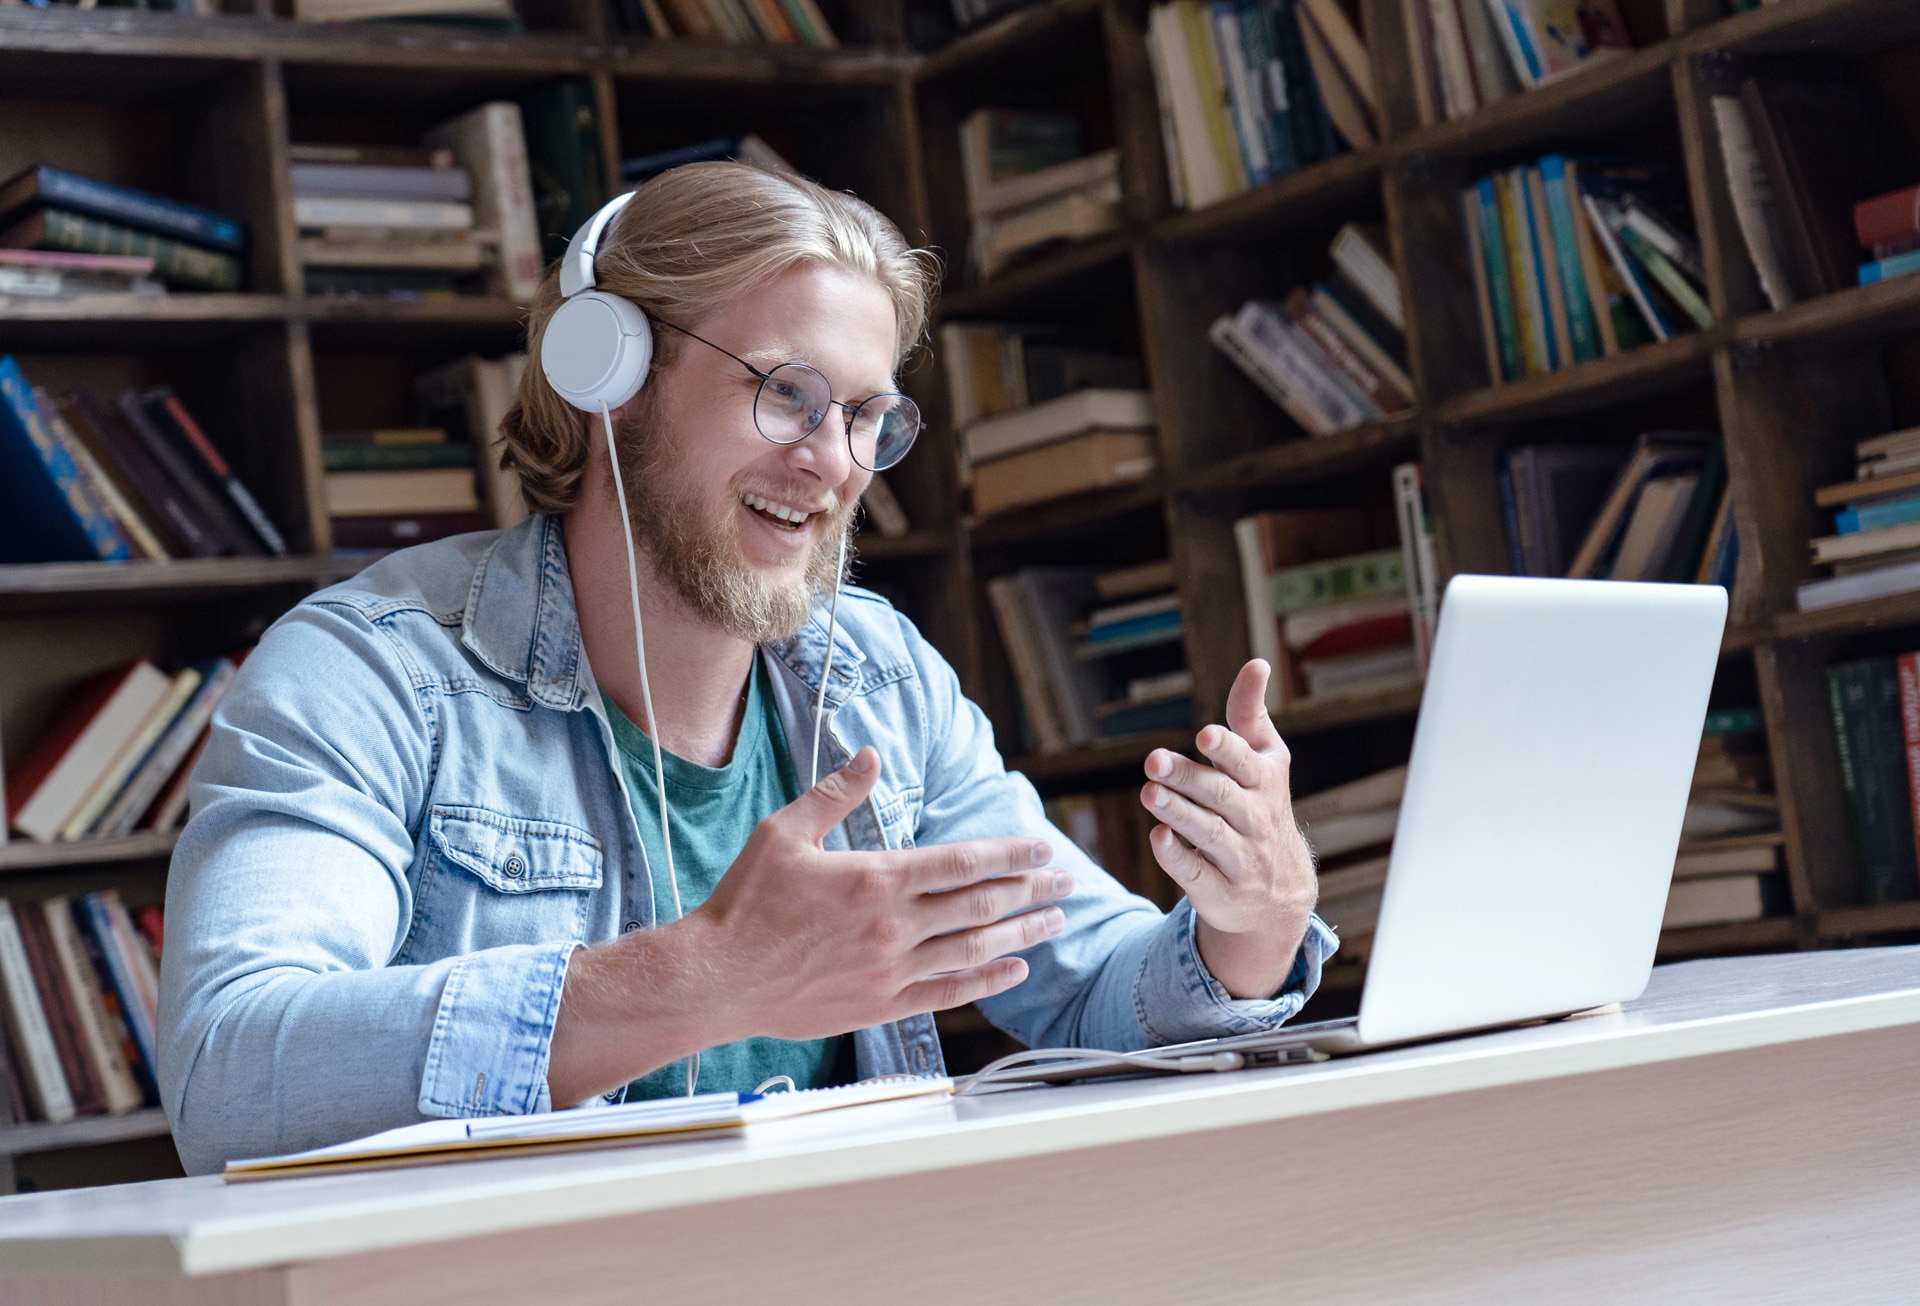 Étudiant heureux professeur en ligne porte un casque et parle appel vidéo regarde un écran d’ordinateur fait un chat de conférence communique avec un tuteur sur Skype, cours de formation à distance en ligne dans une bibliothèque